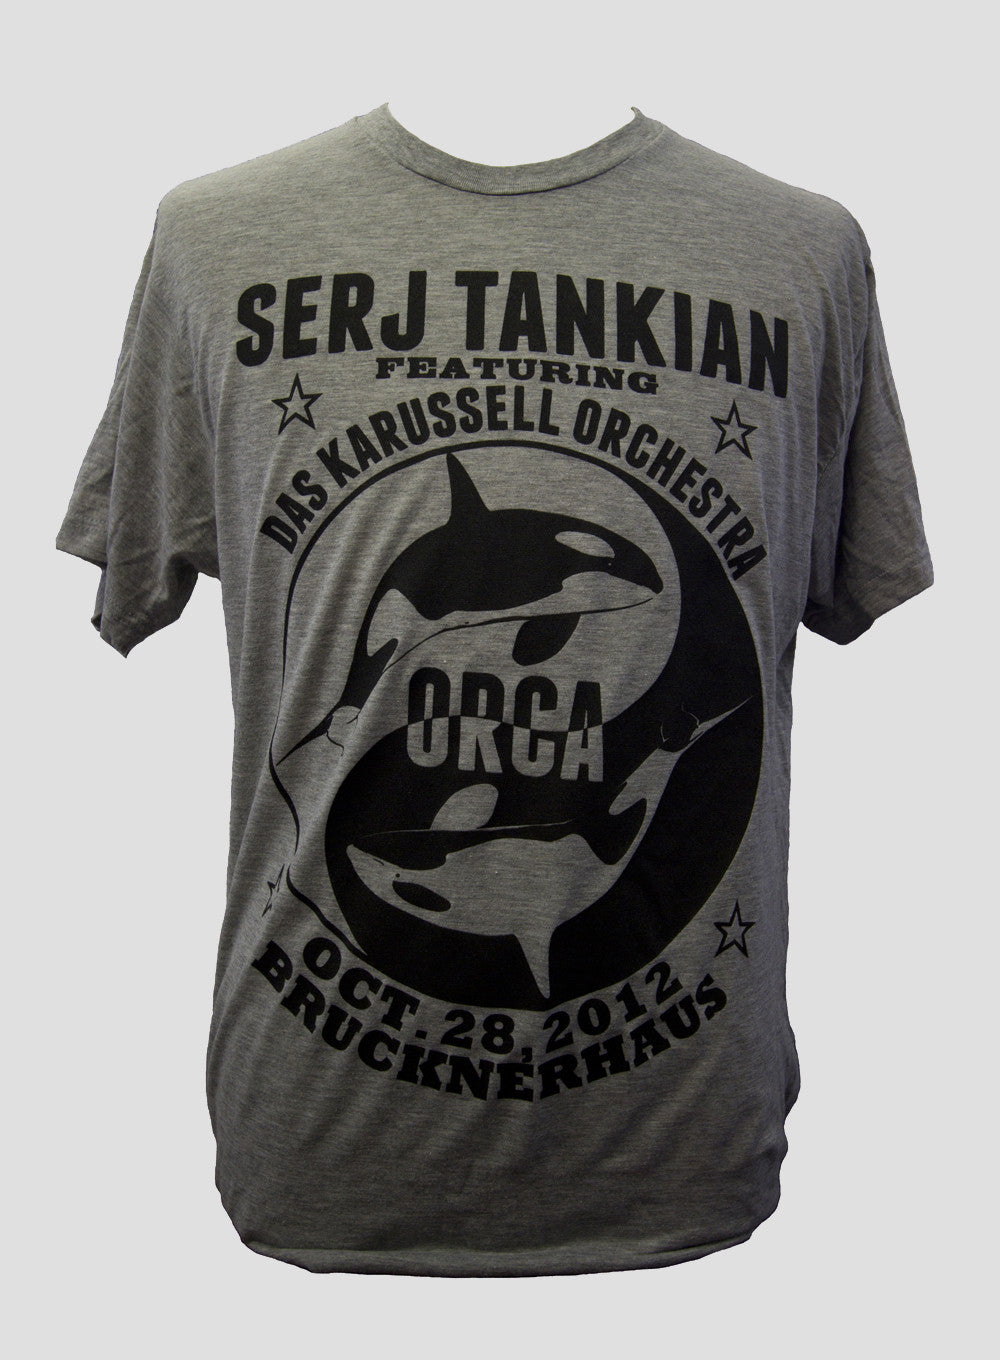 Orca Kickstarter T-Shirt